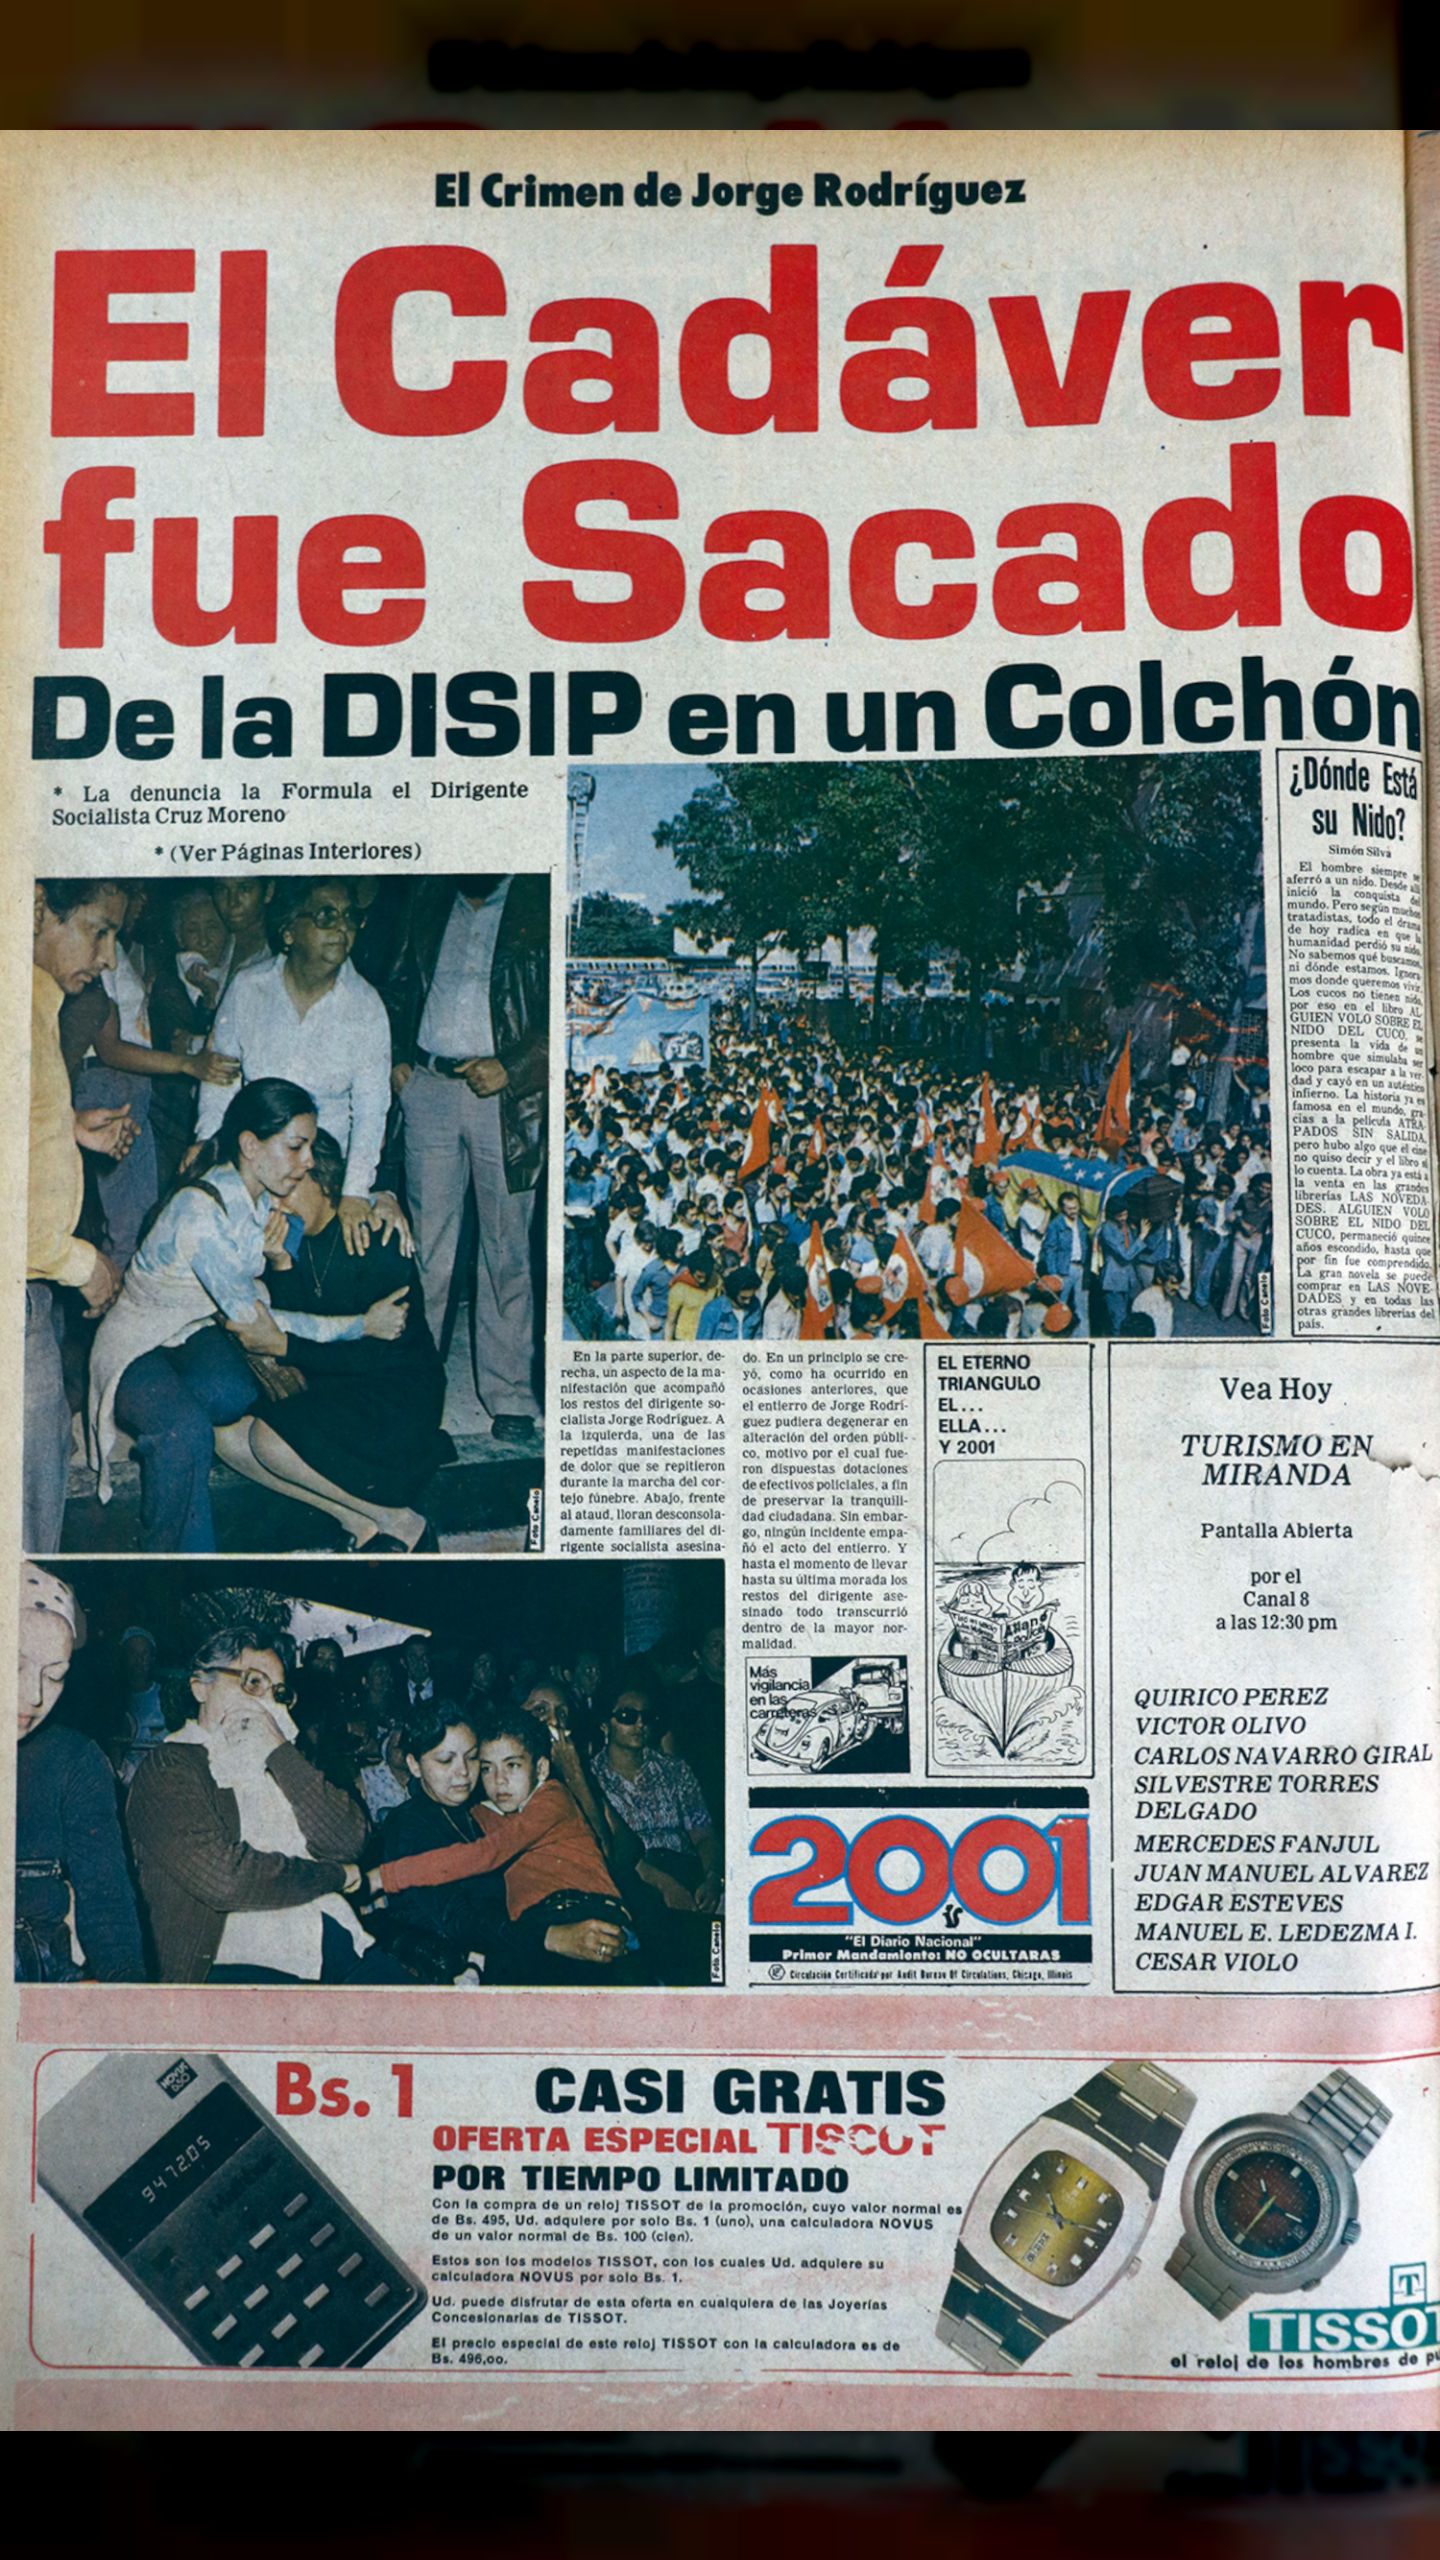 El crimen de Jorge Rodríguez (2001, 27 de julio 1976)